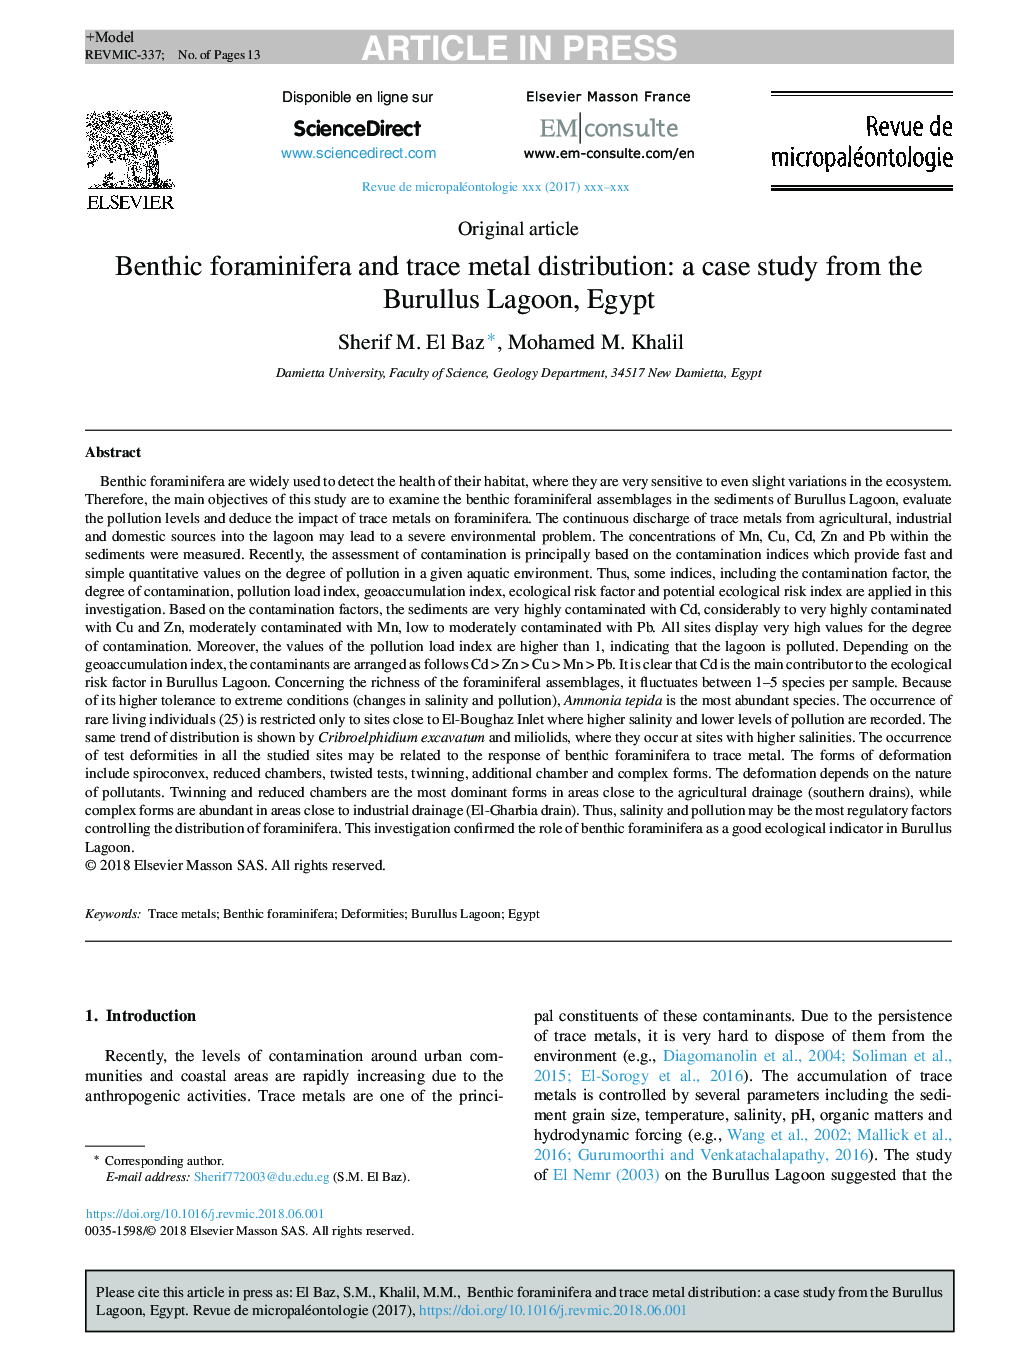 توزیع فورامینیفر بنتونی و توزیع فلزات ردیابی: یک مطالعه موردی از لارو بورولوس مصر